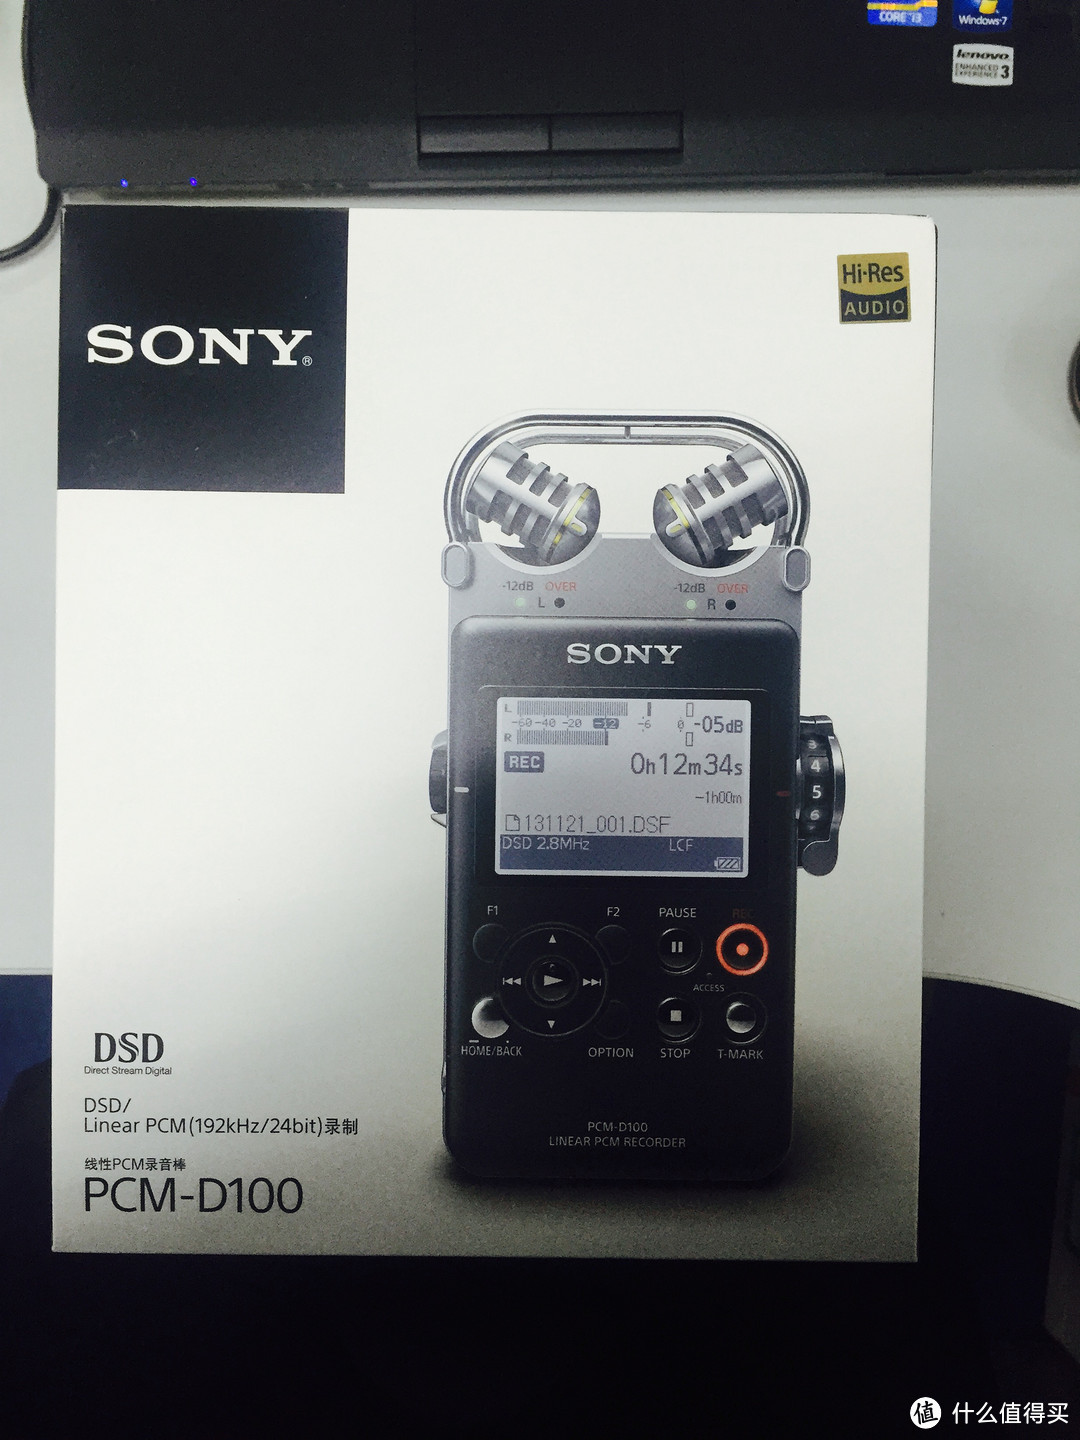 SONY 索尼 PCM-D100数码录音笔来咯